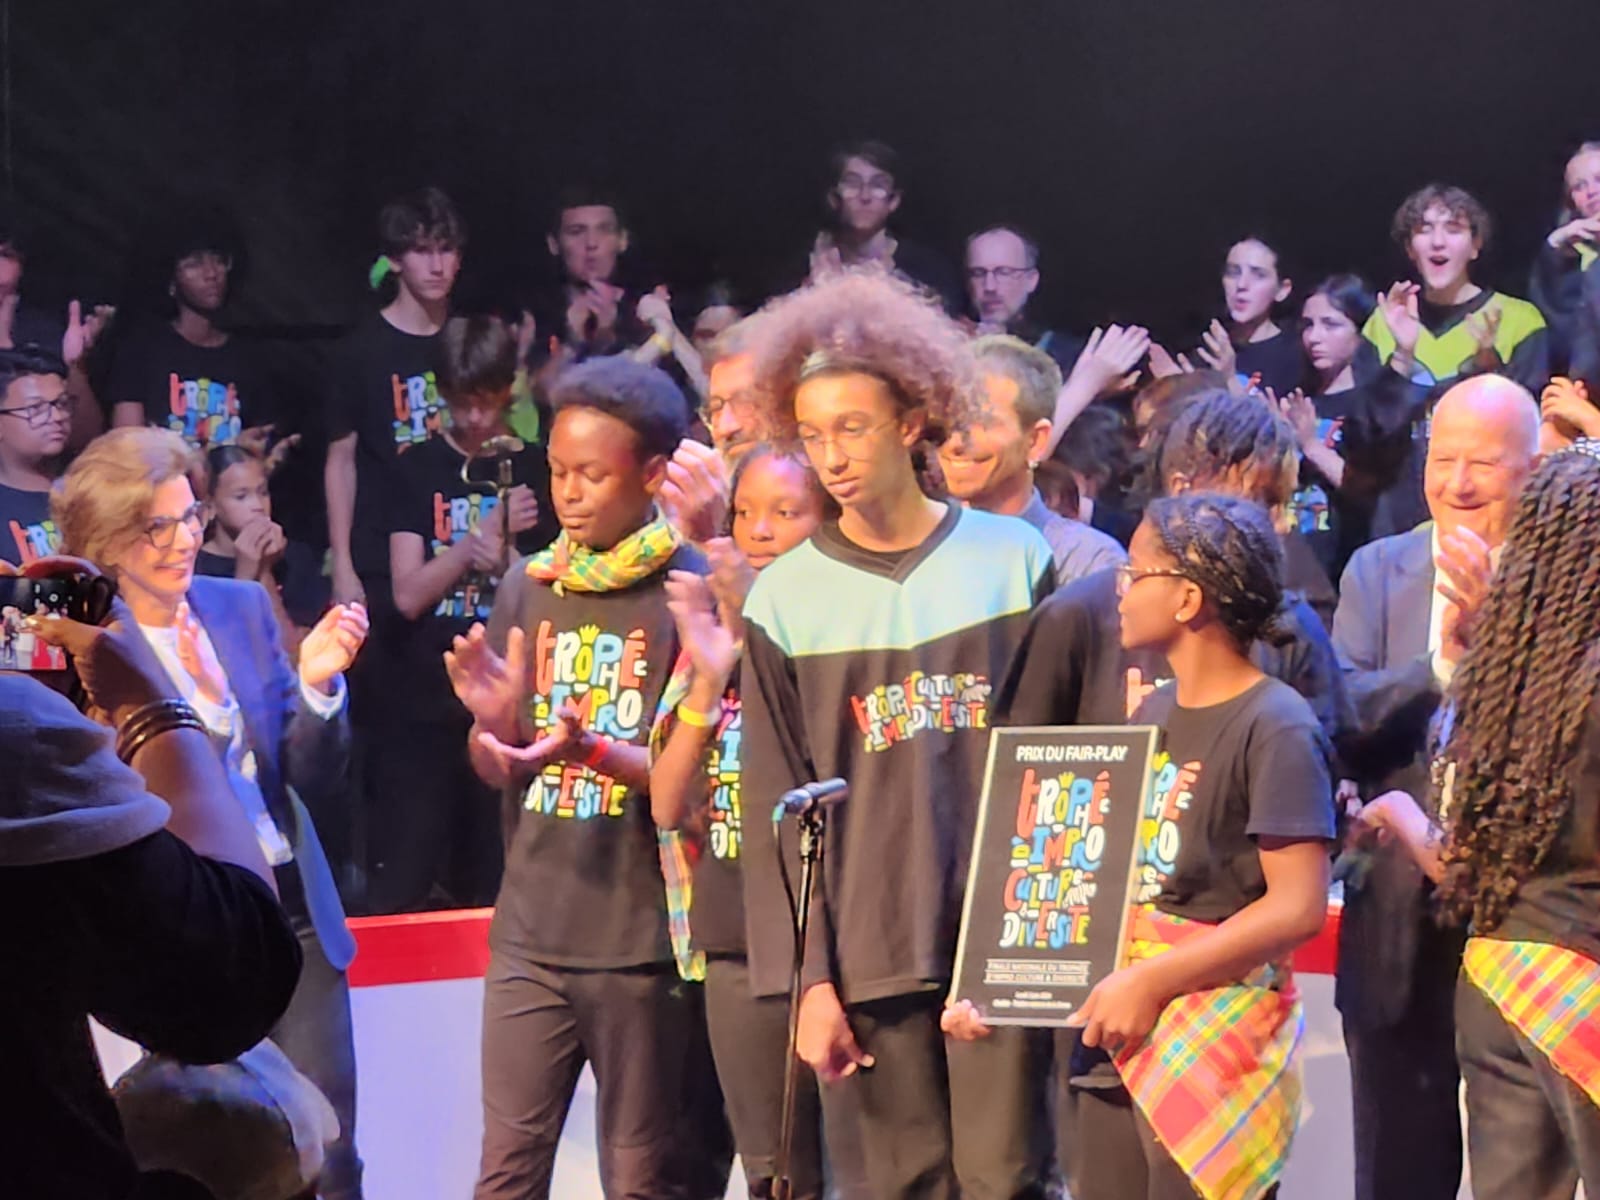     Des collégiens de Martinique brillent à Paris lors d'une prestation d'improvisation

